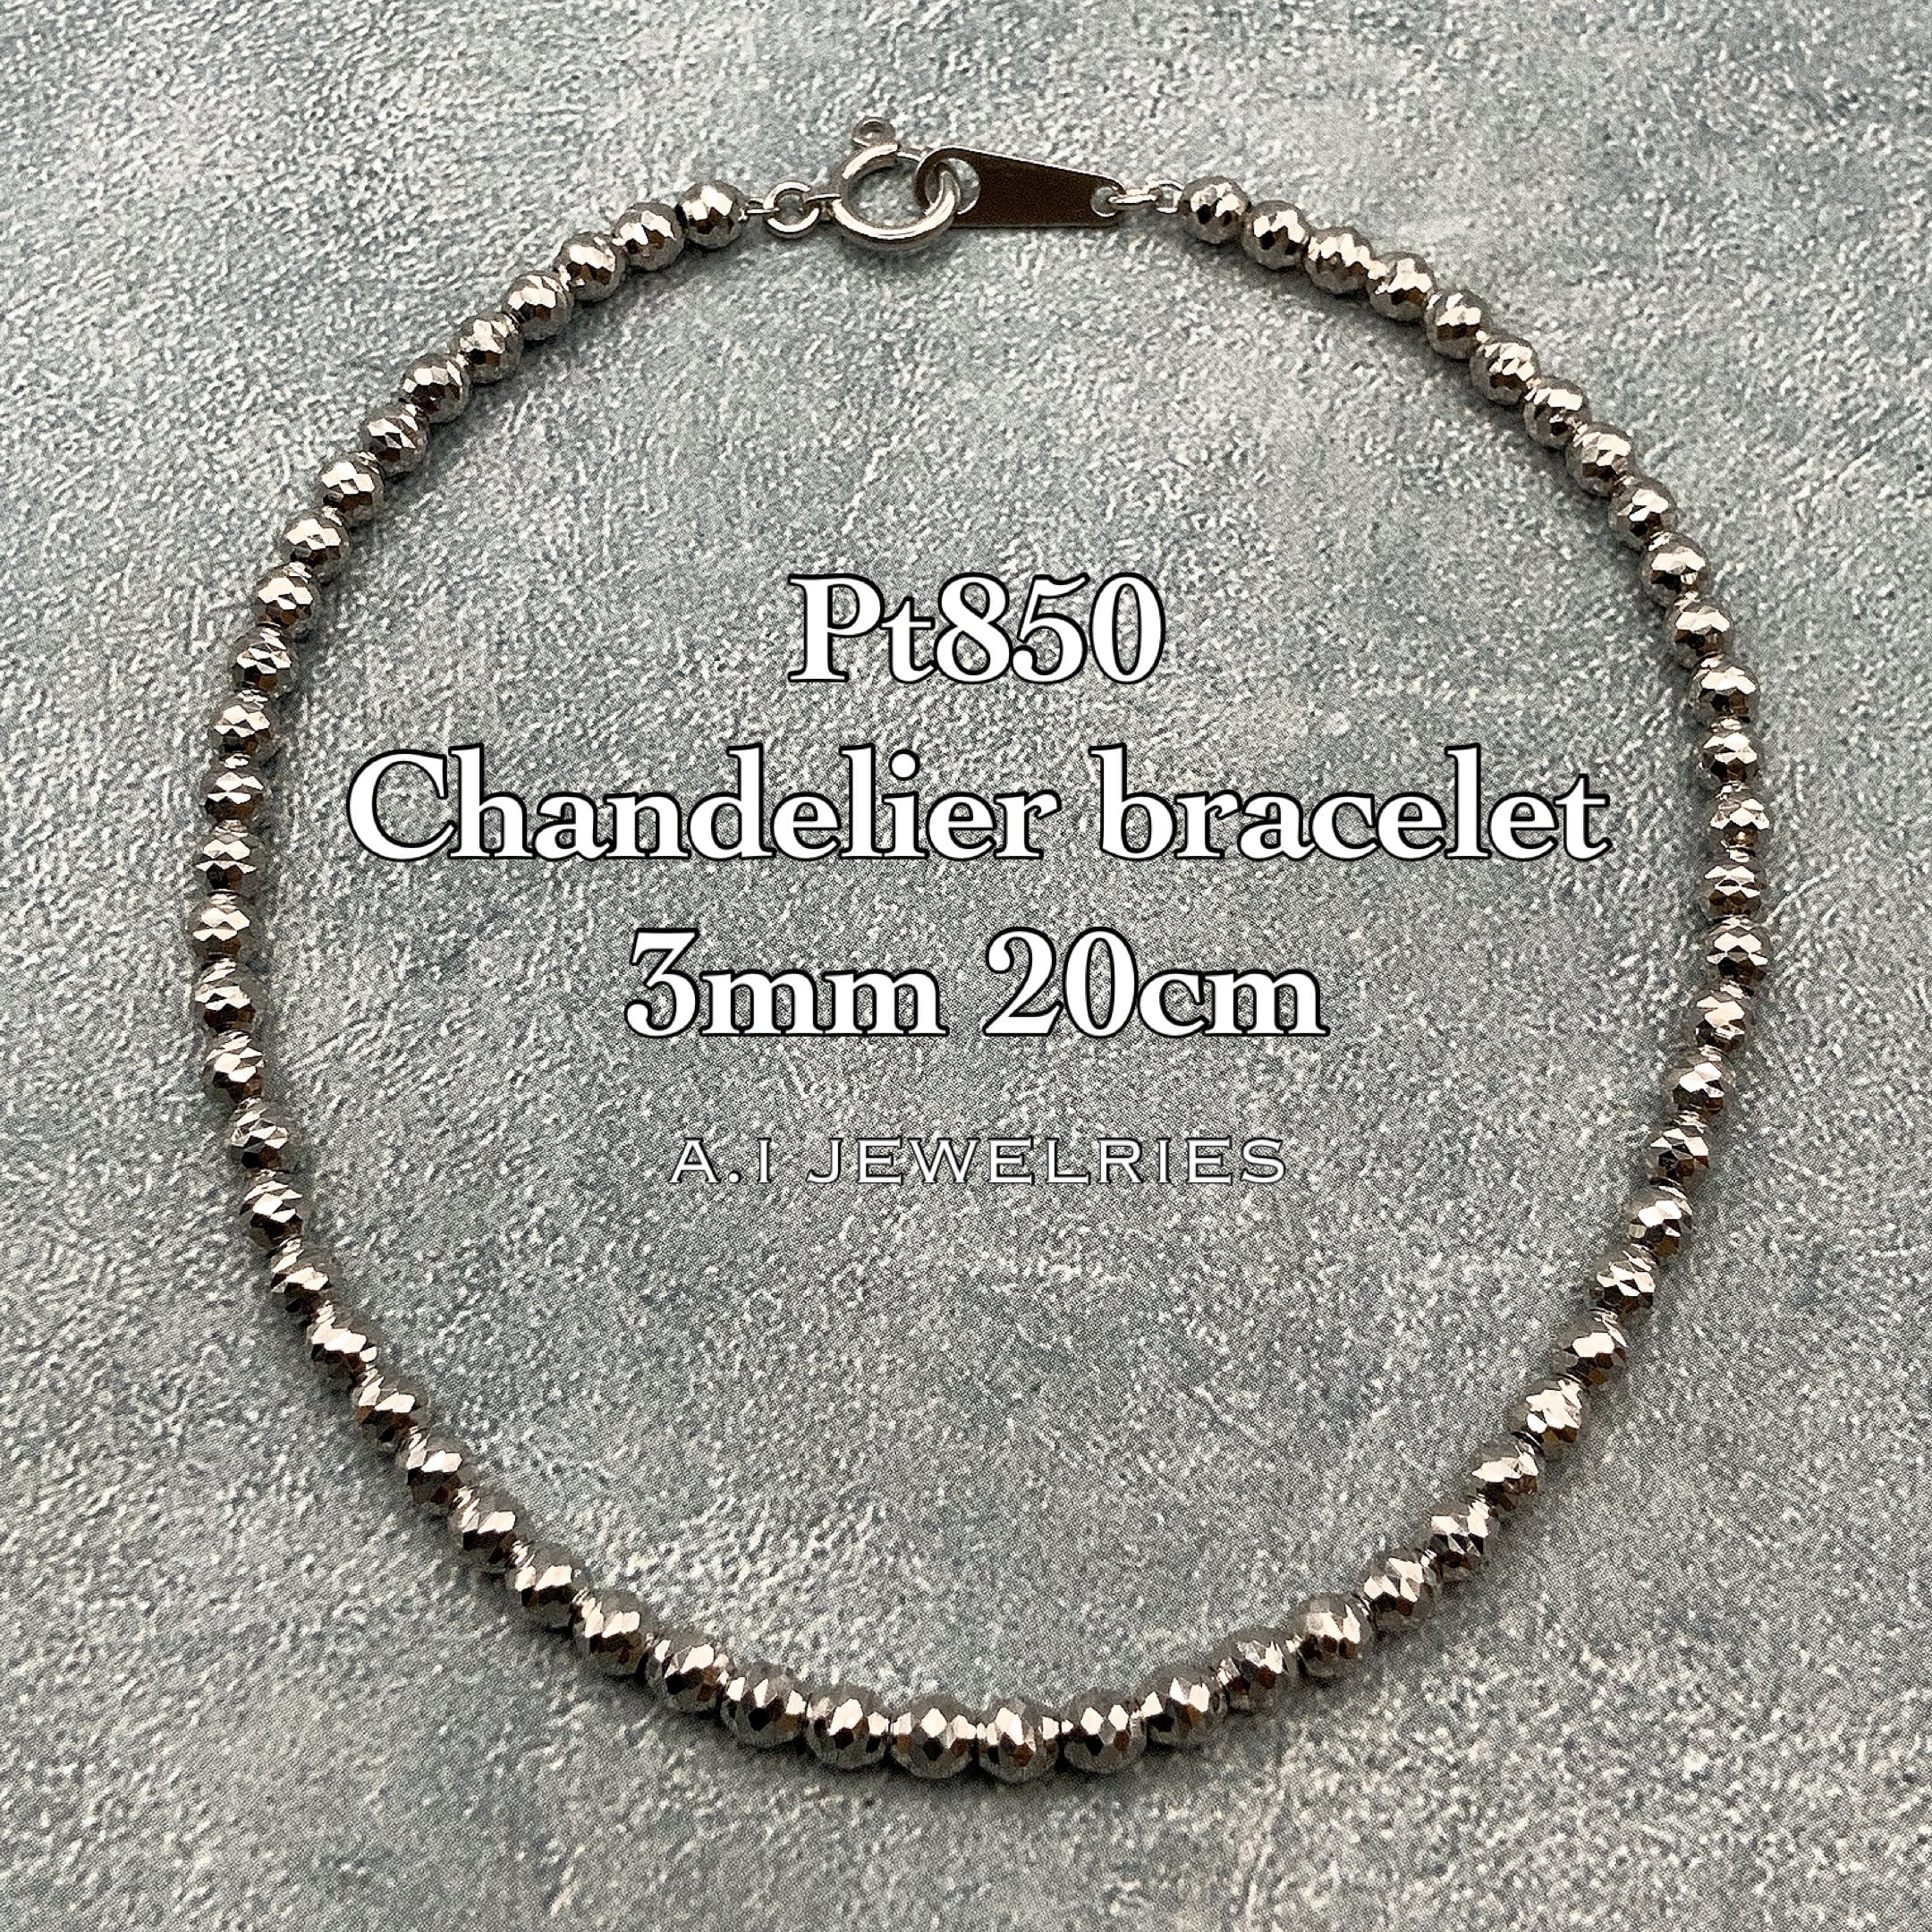 v`i850 3mm VfA uXbg 20cm / Pt850 Chandelier bracelet 3mm 20cm iԁFpb-3mcd20